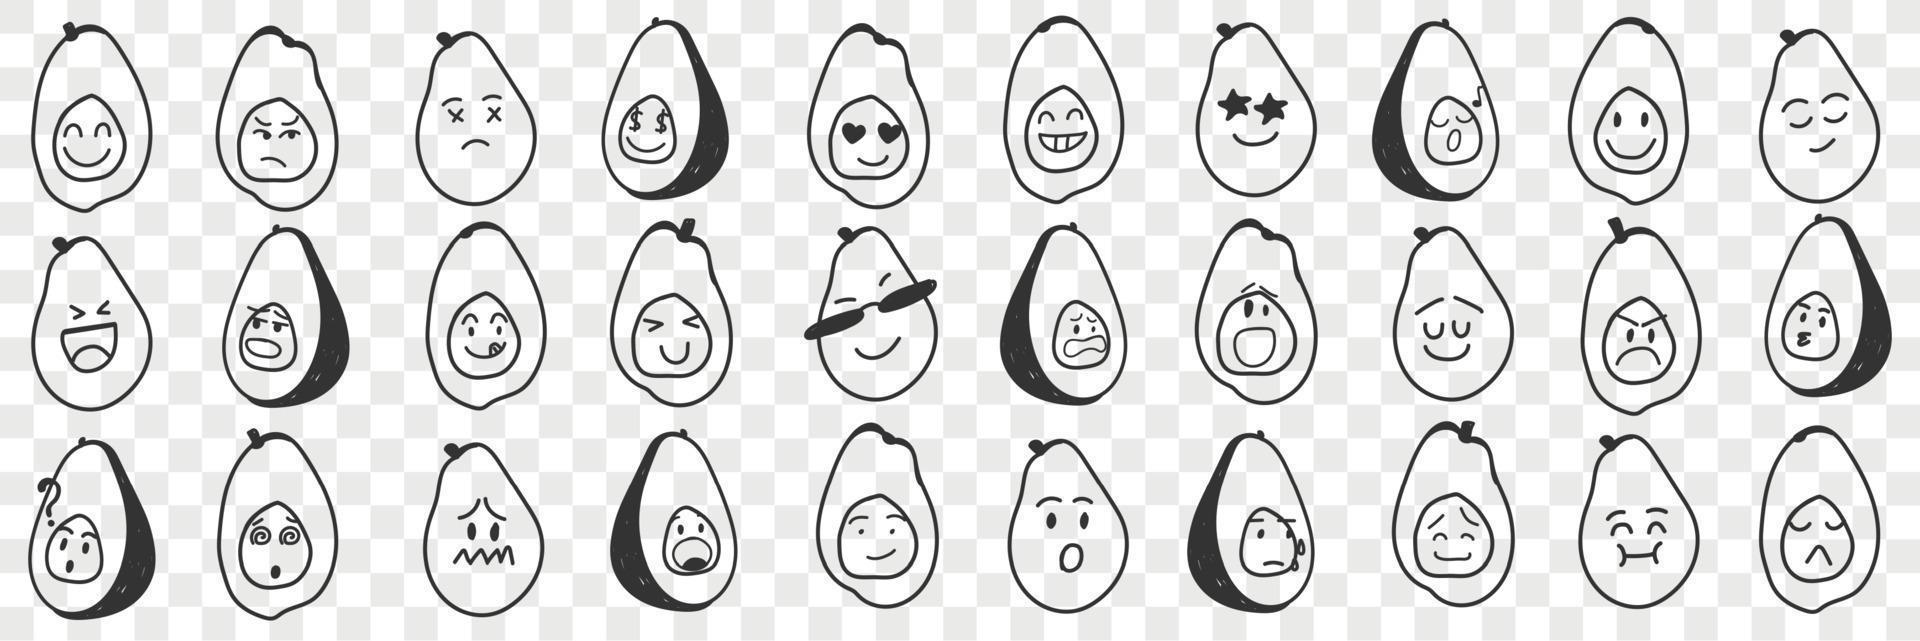 gracioso aguacate emoji garabatear colocar. colección de mano dibujado varios aguacate frutas con gracioso linda caras con varios expresiones emoticon aislado en transparente antecedentes vector